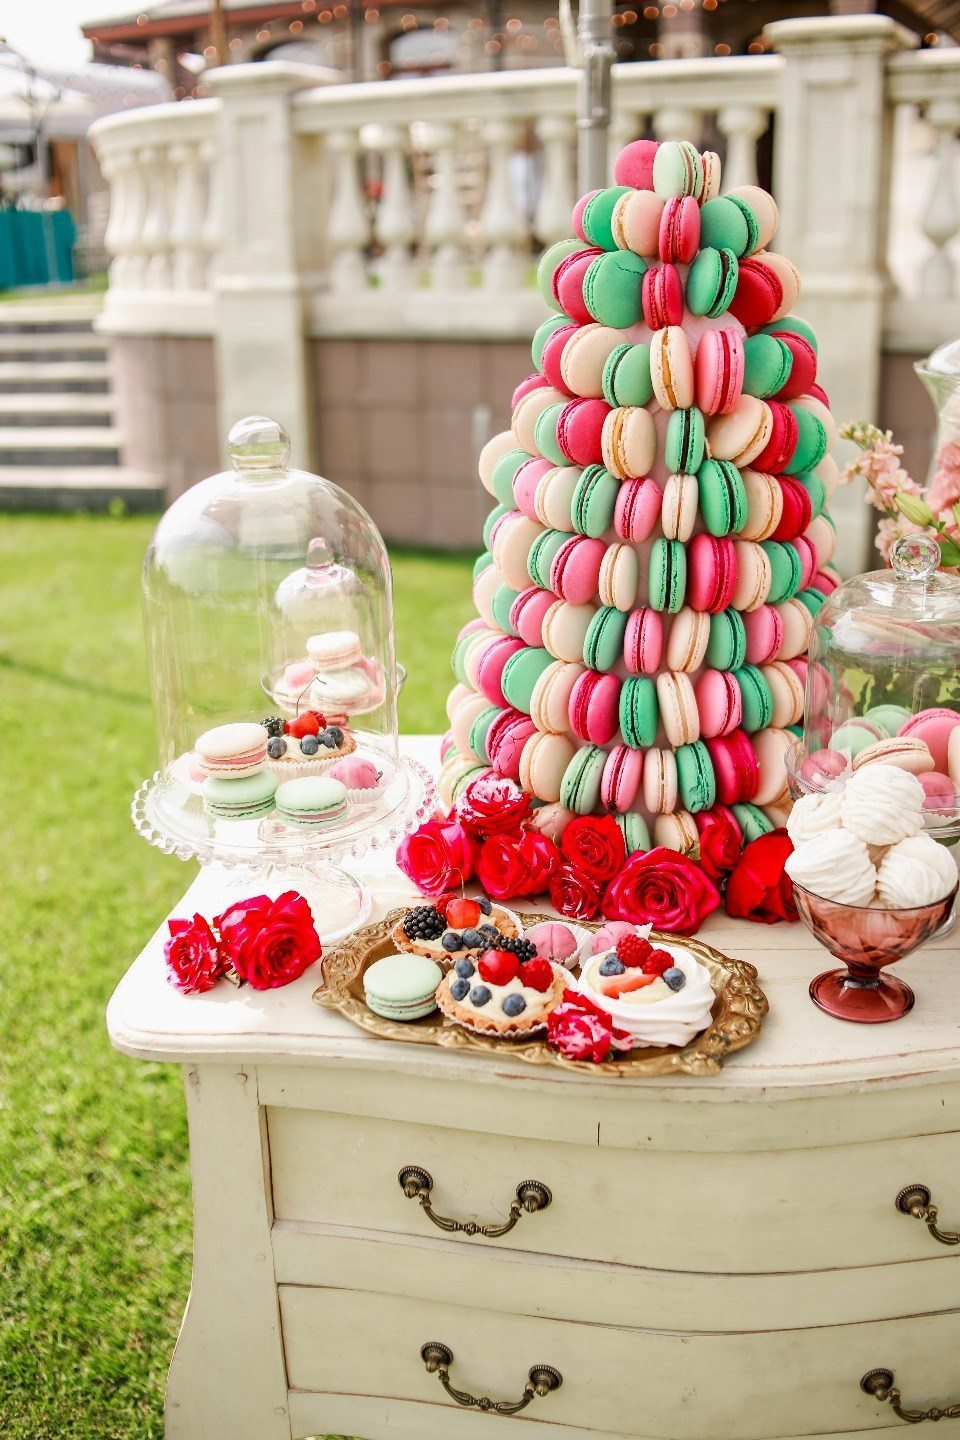 Μια ενδιαφέρουσα έμφαση στα γλυκά σε ένα ζουμερό και φωτεινό τραπέζι θα είναι χαρούμενα ετικέτες, φτιαγμένα στο γενικό ύφος του γάμου